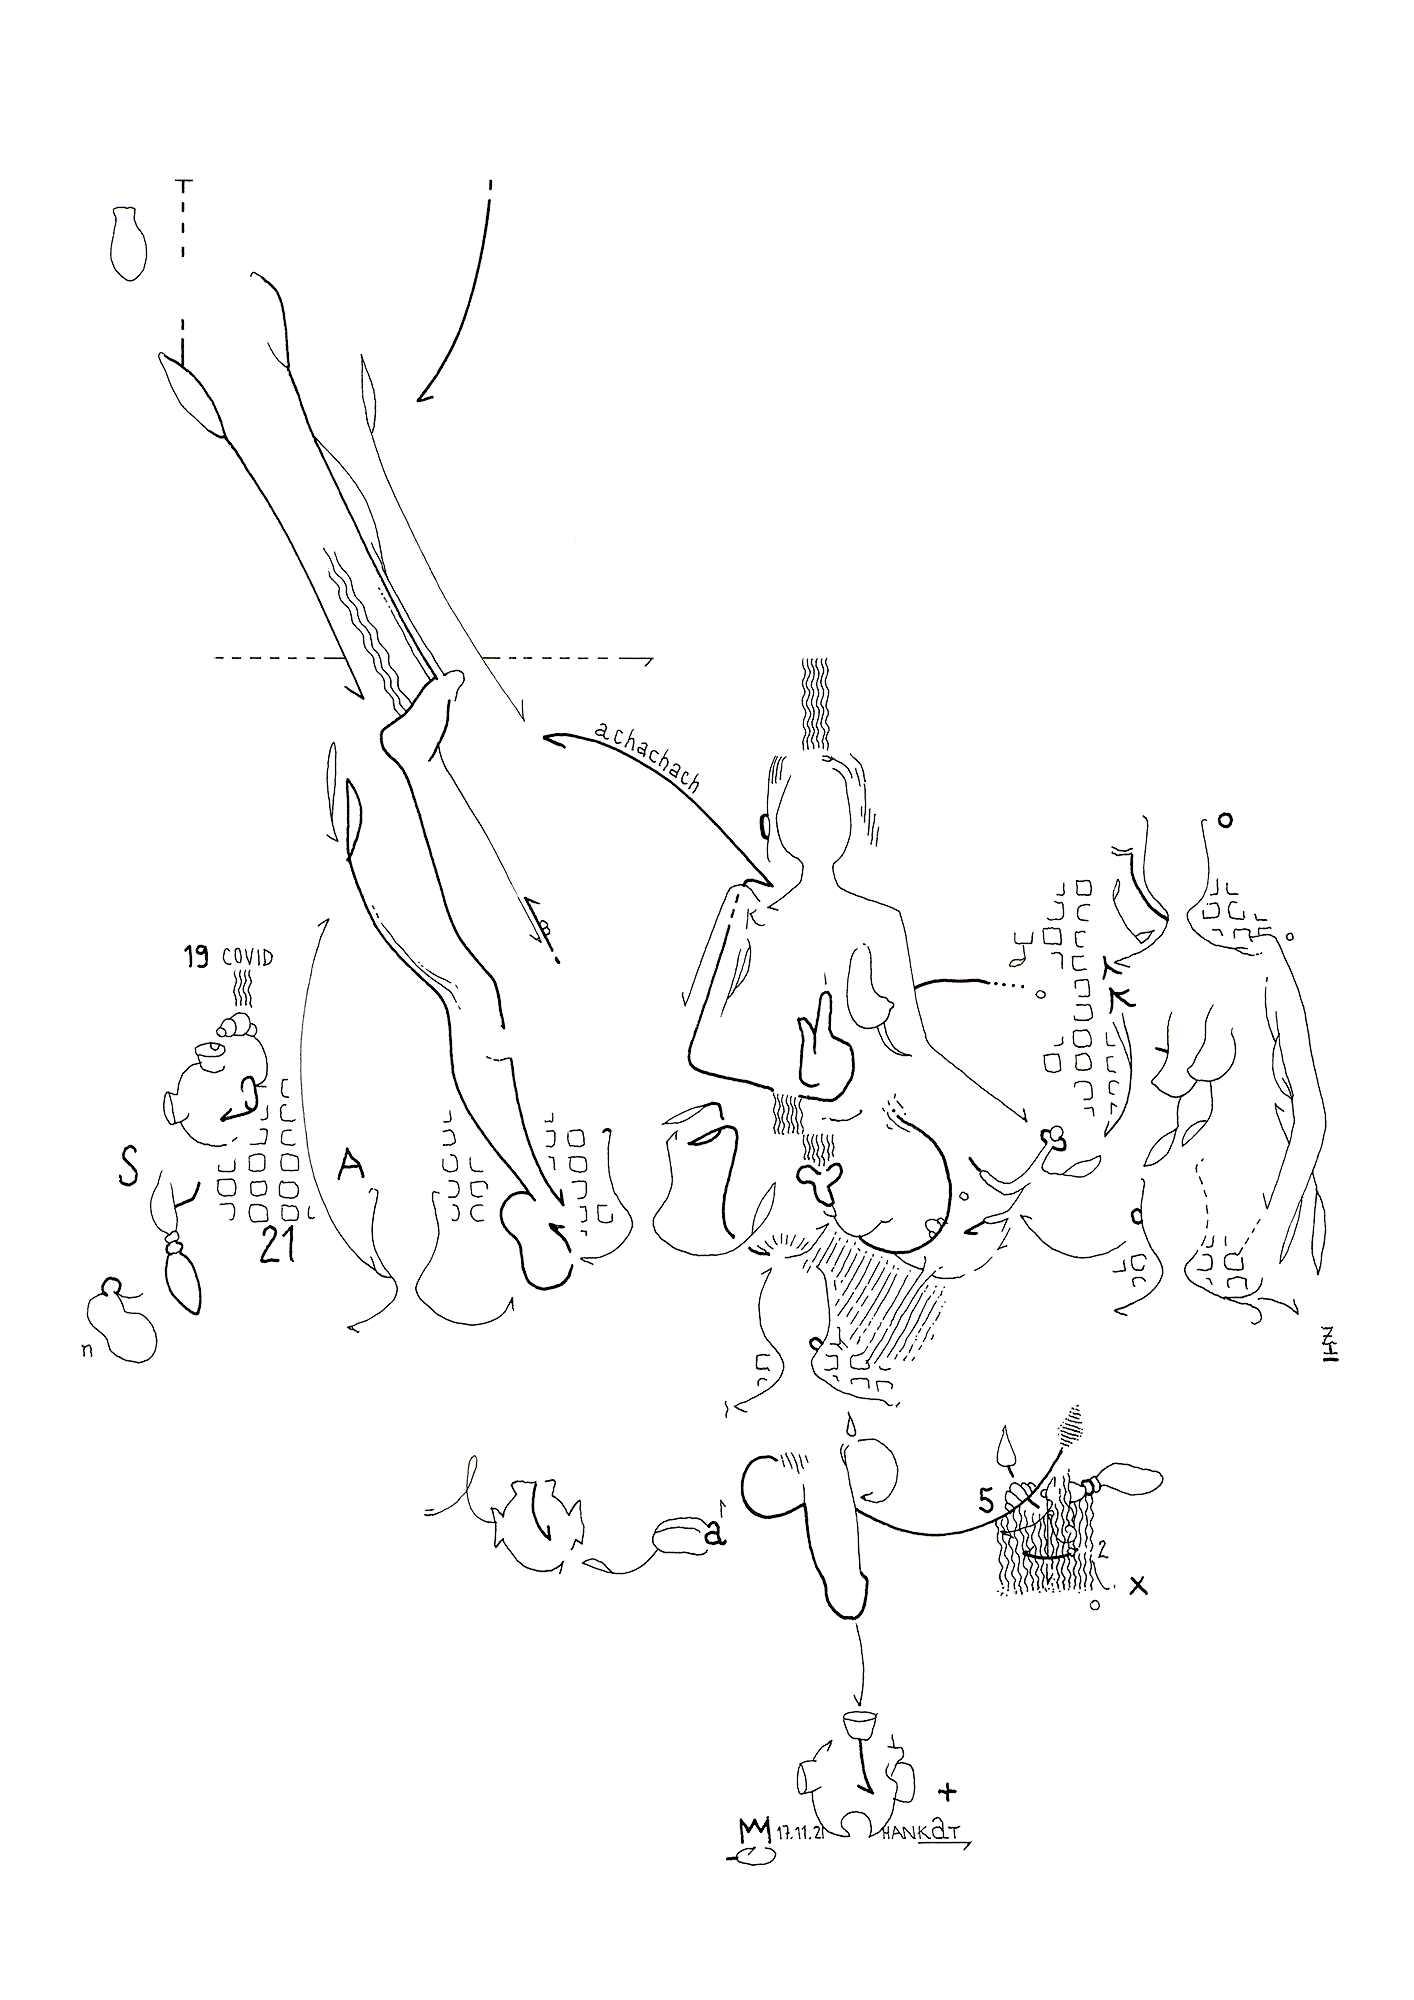 Hannes Kater: Tageszeichnung (Zeichnung/drawing) vom 17.11.2021 (1414 x 2000 Pixel)